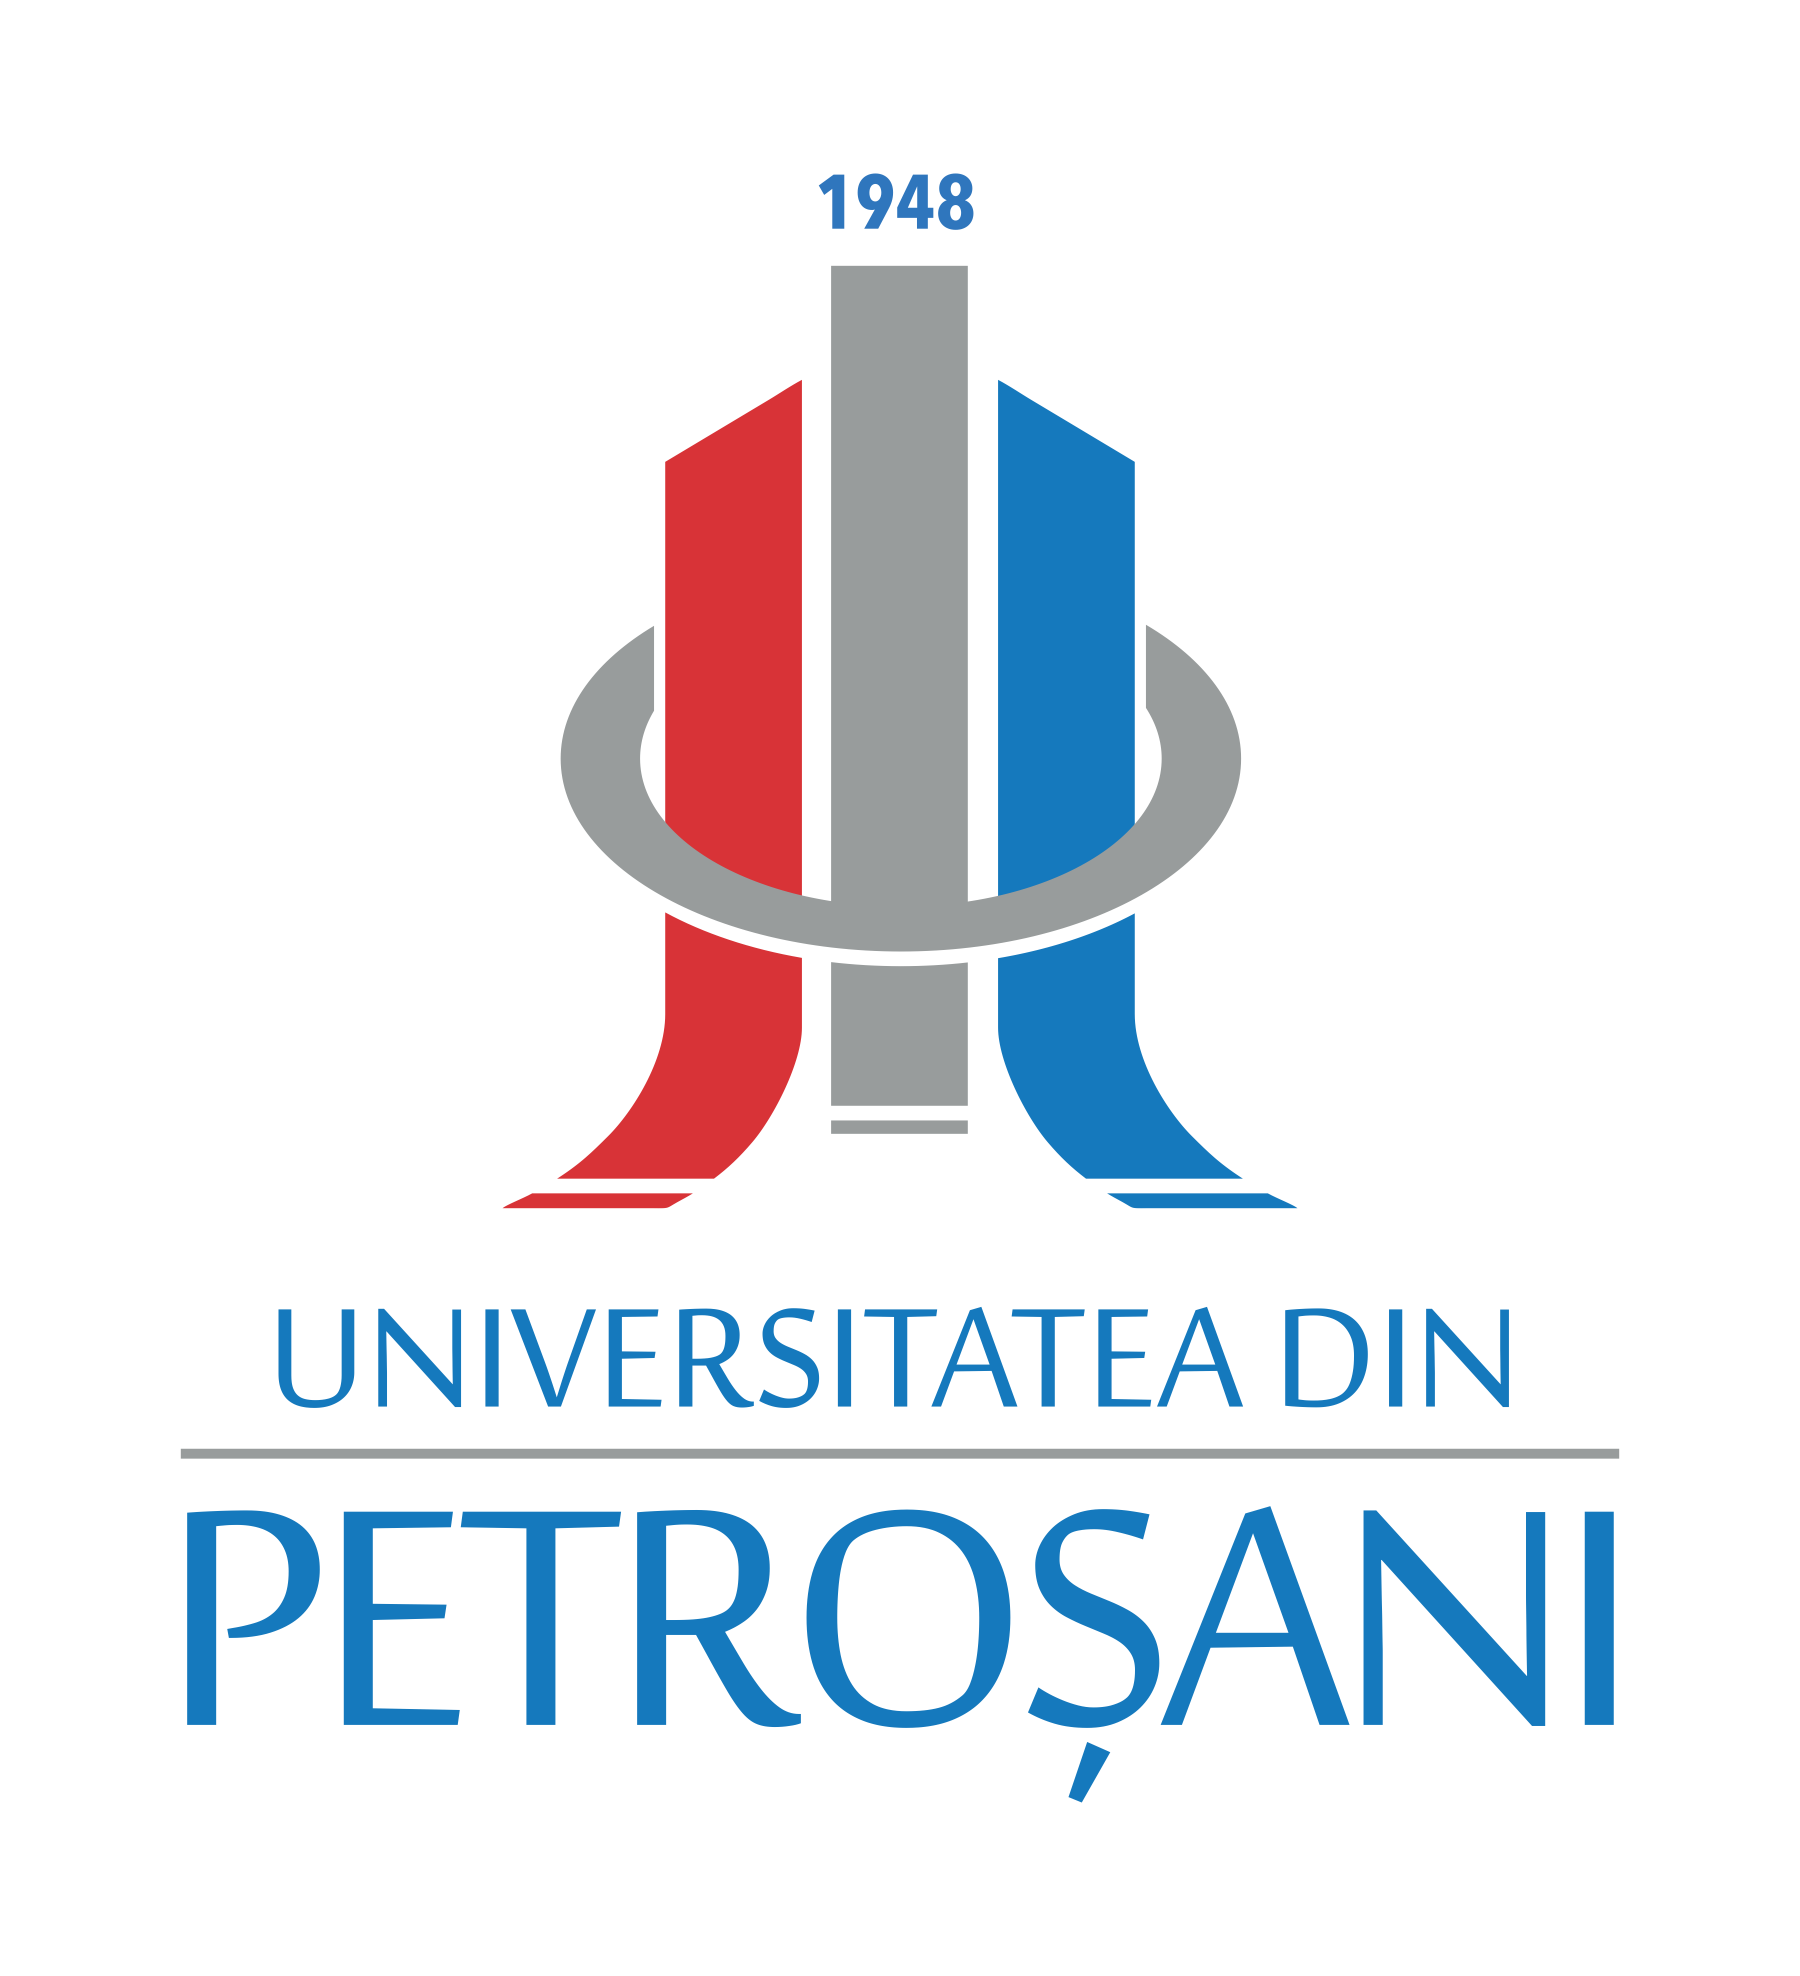 UPET logo